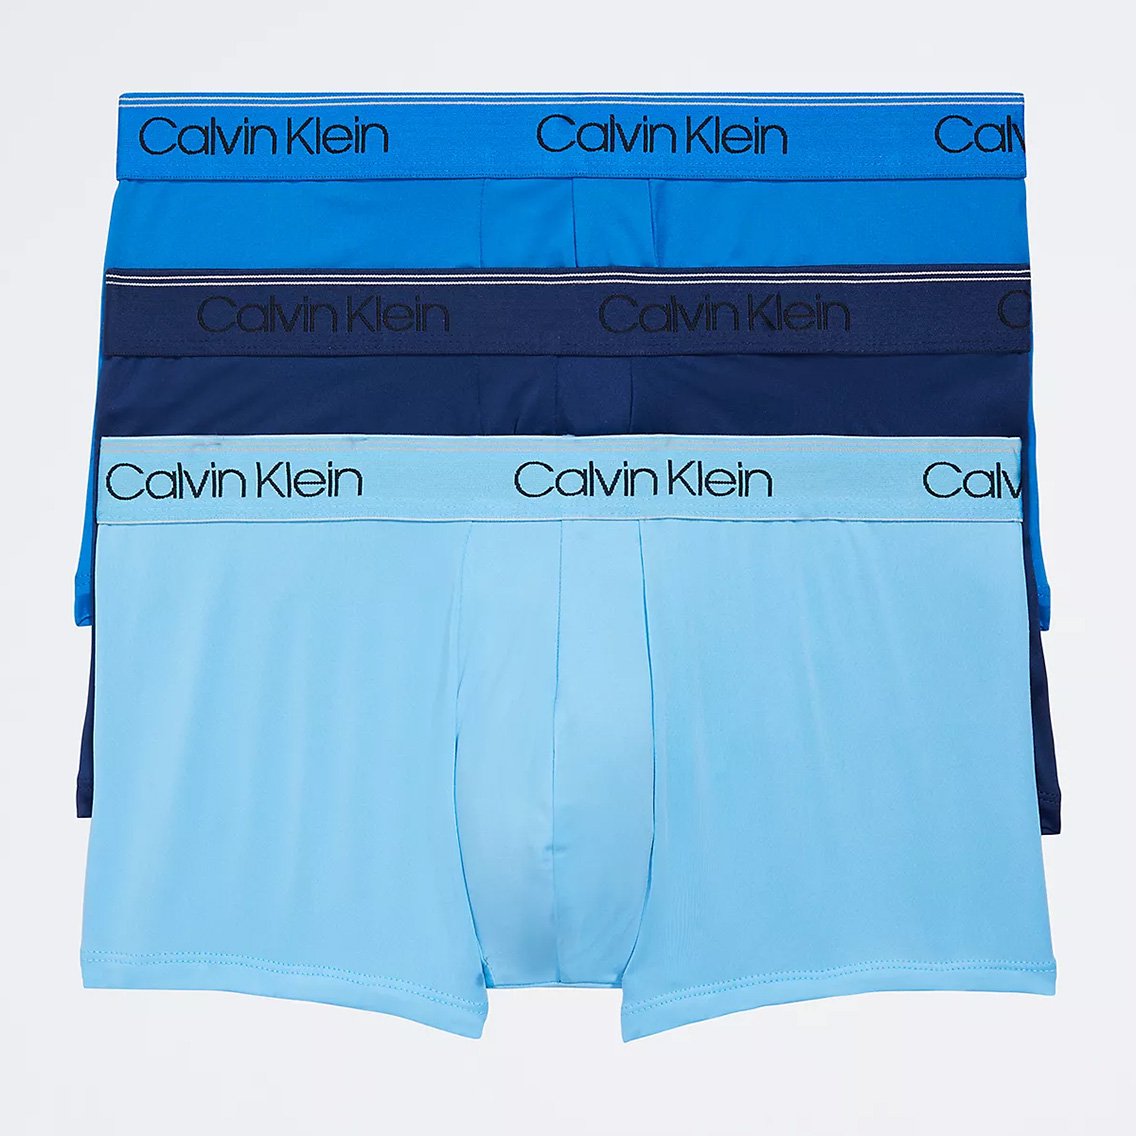 Calvin Klein(カルバンクライン)[NB2569-400]:ボクサーパンツ,男性下着,インナーの通販